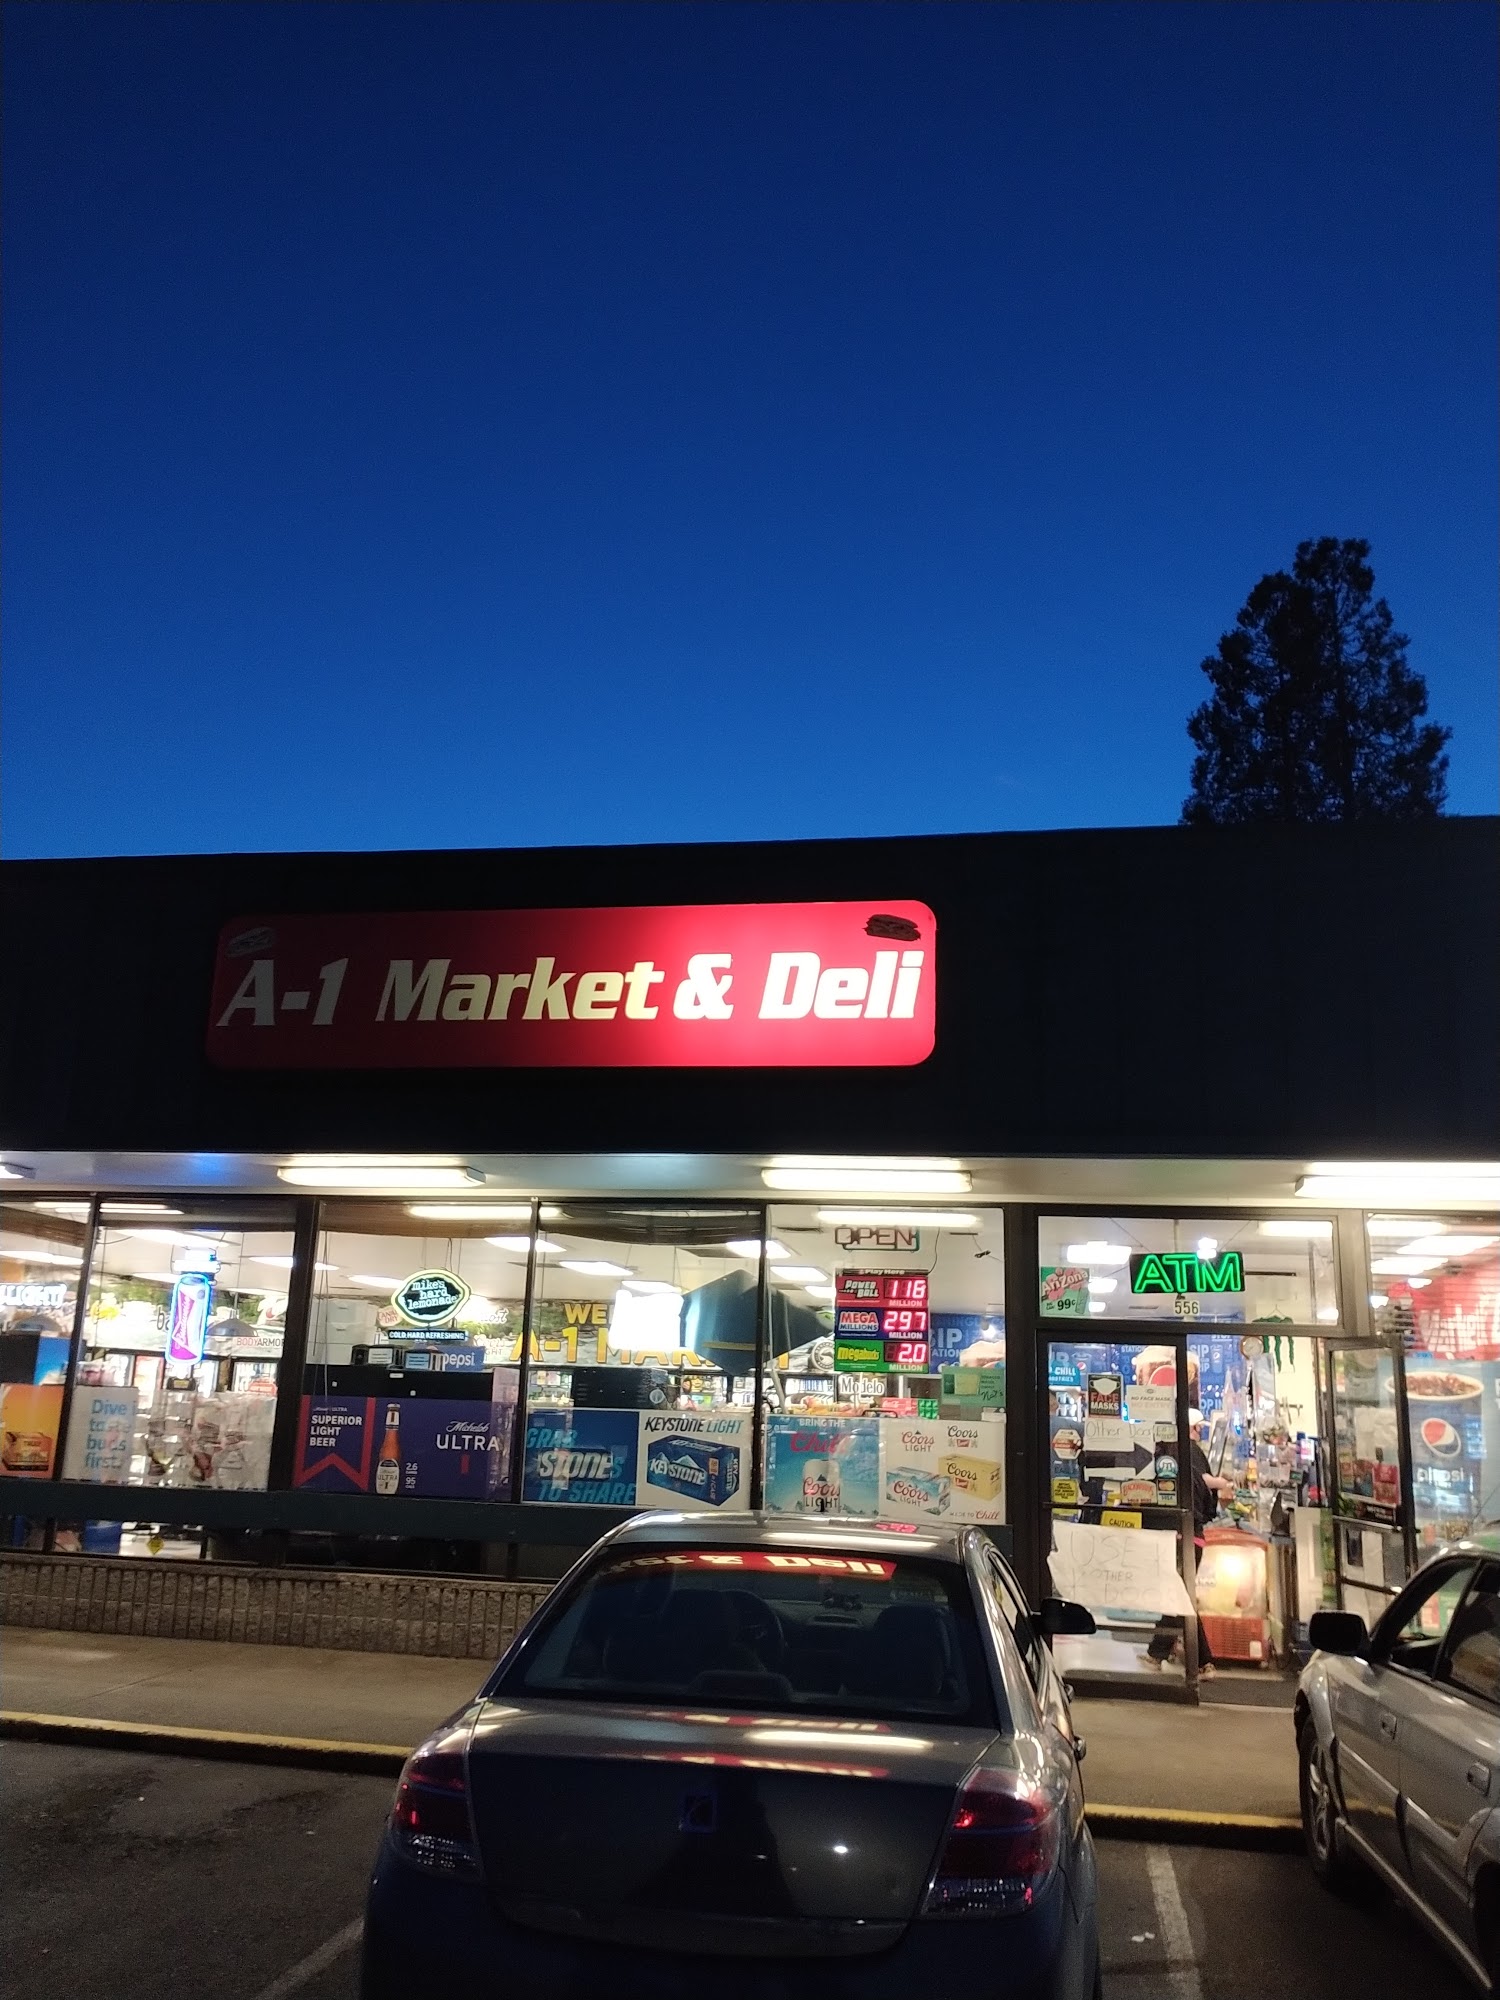 A-1 Deli and Market